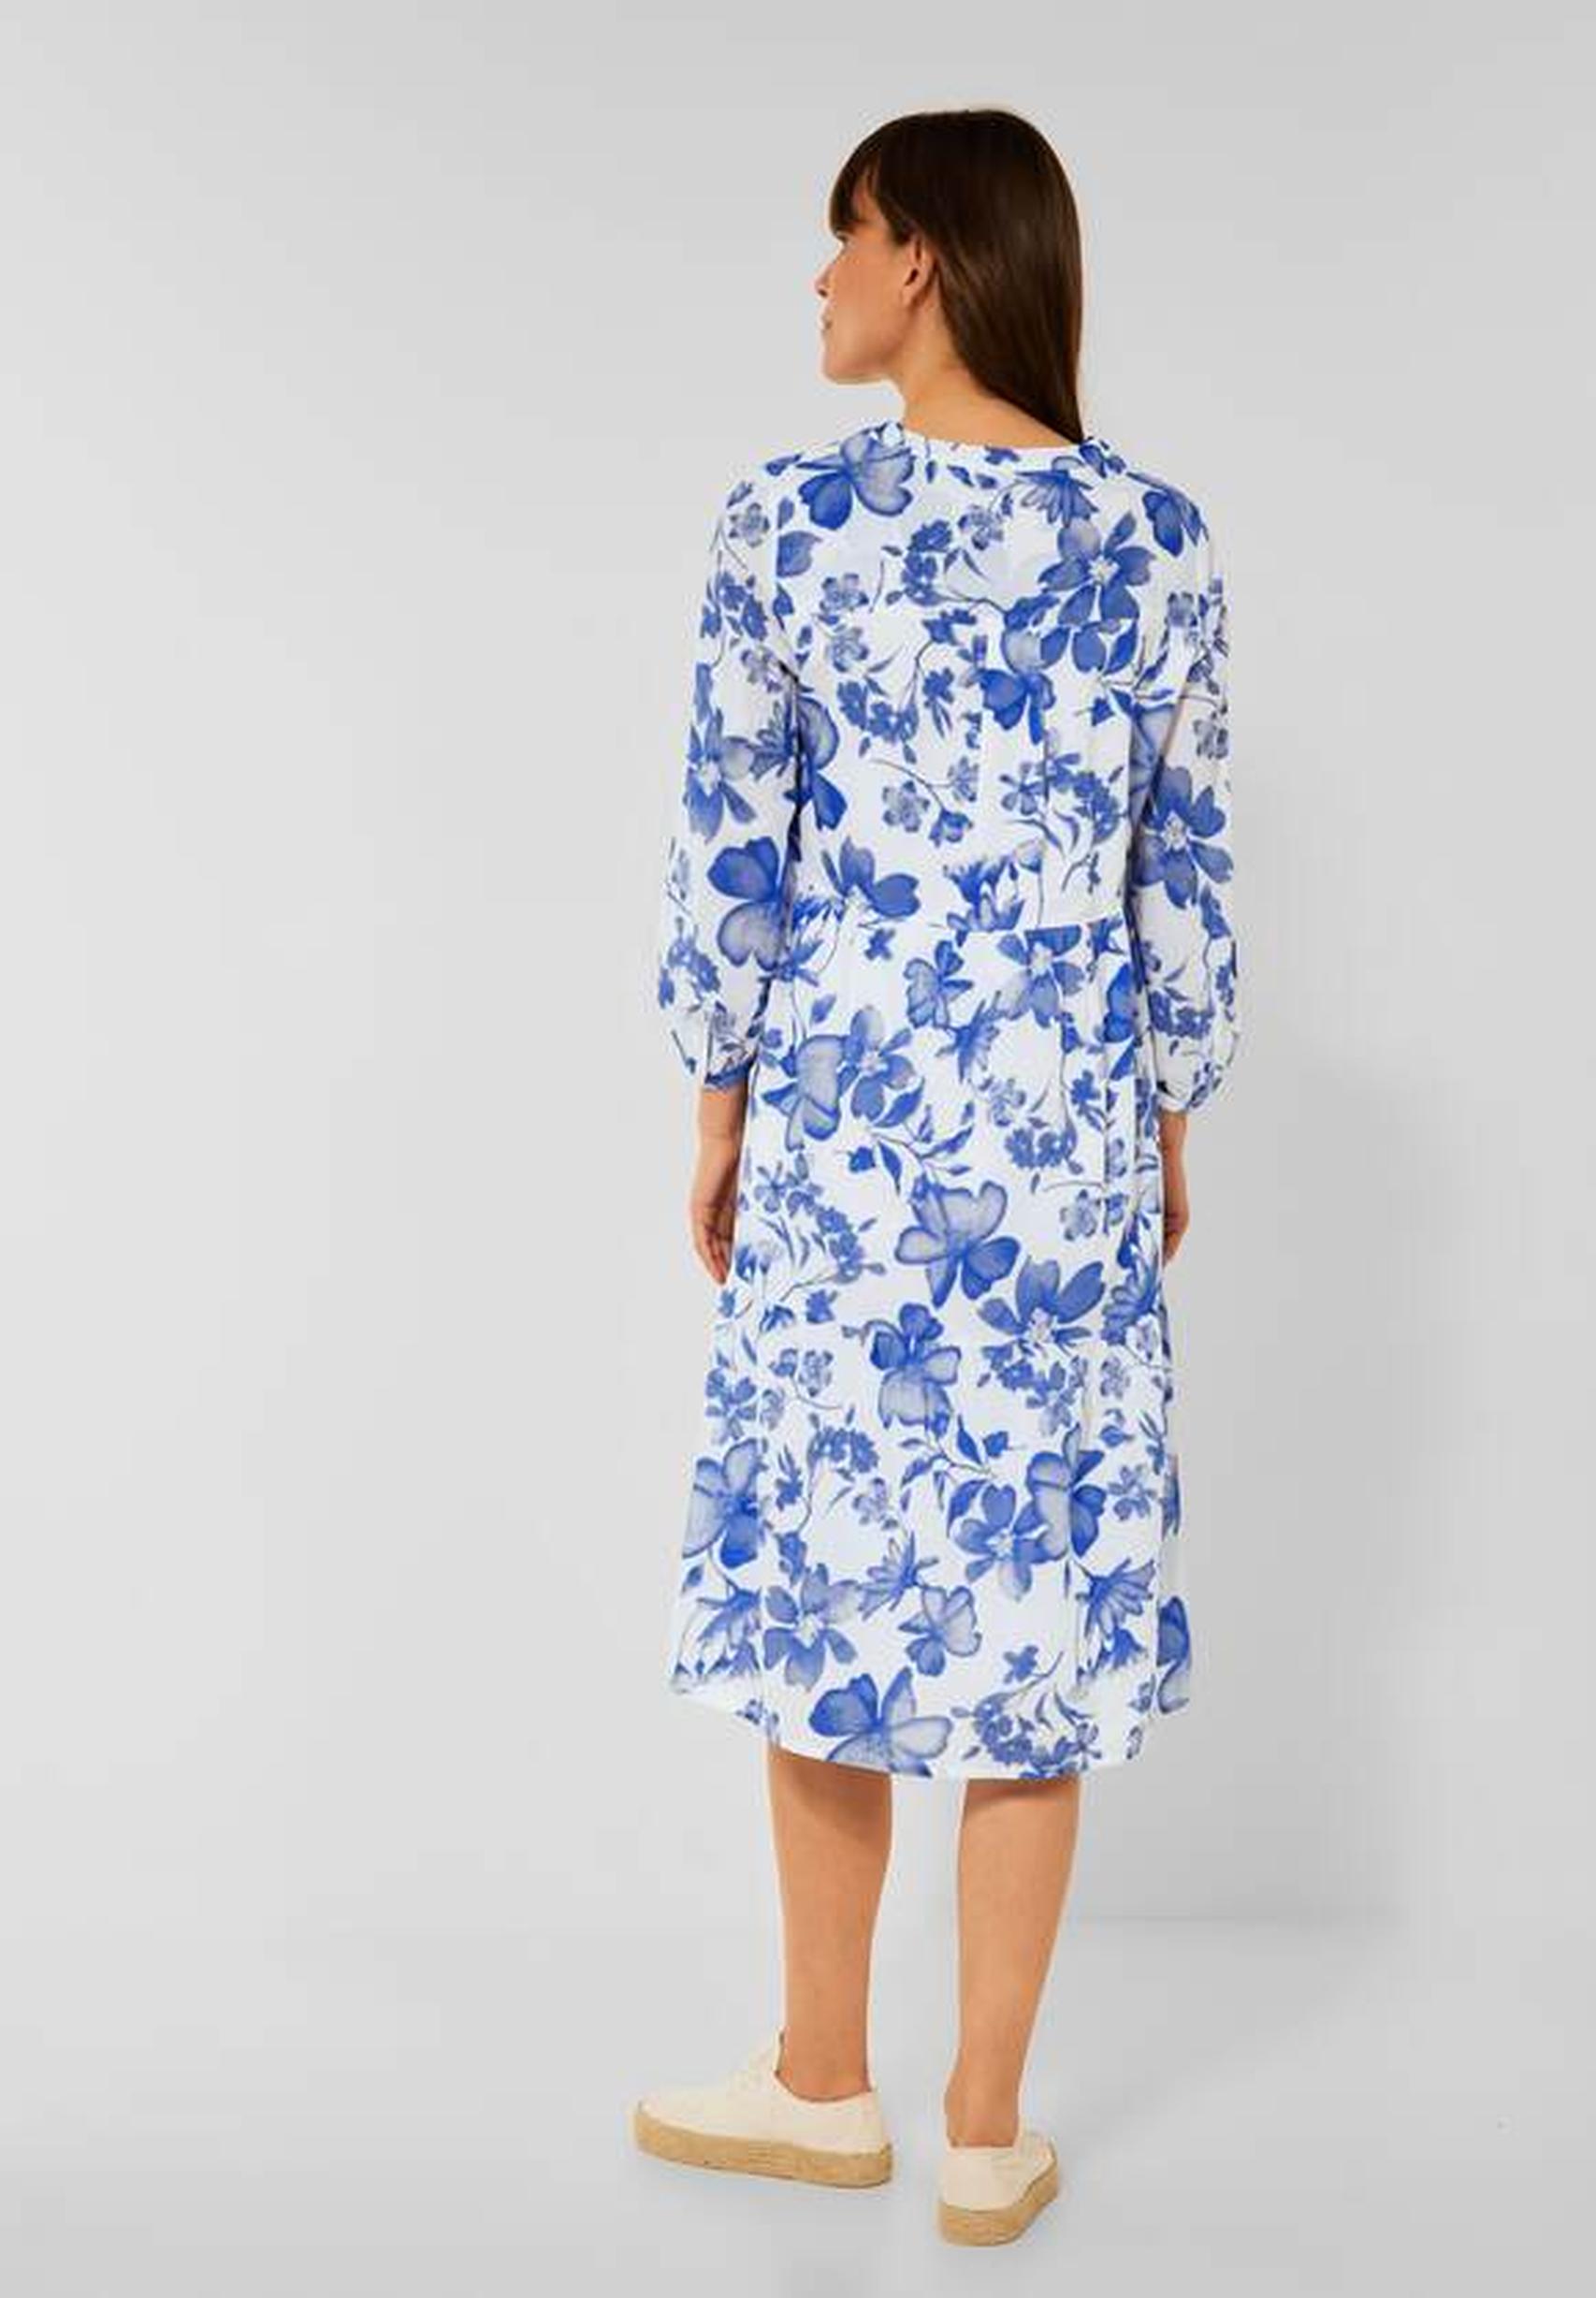 Modisches Kleid aus der Kollektion von CECIL in weiss blau geblümt 143210